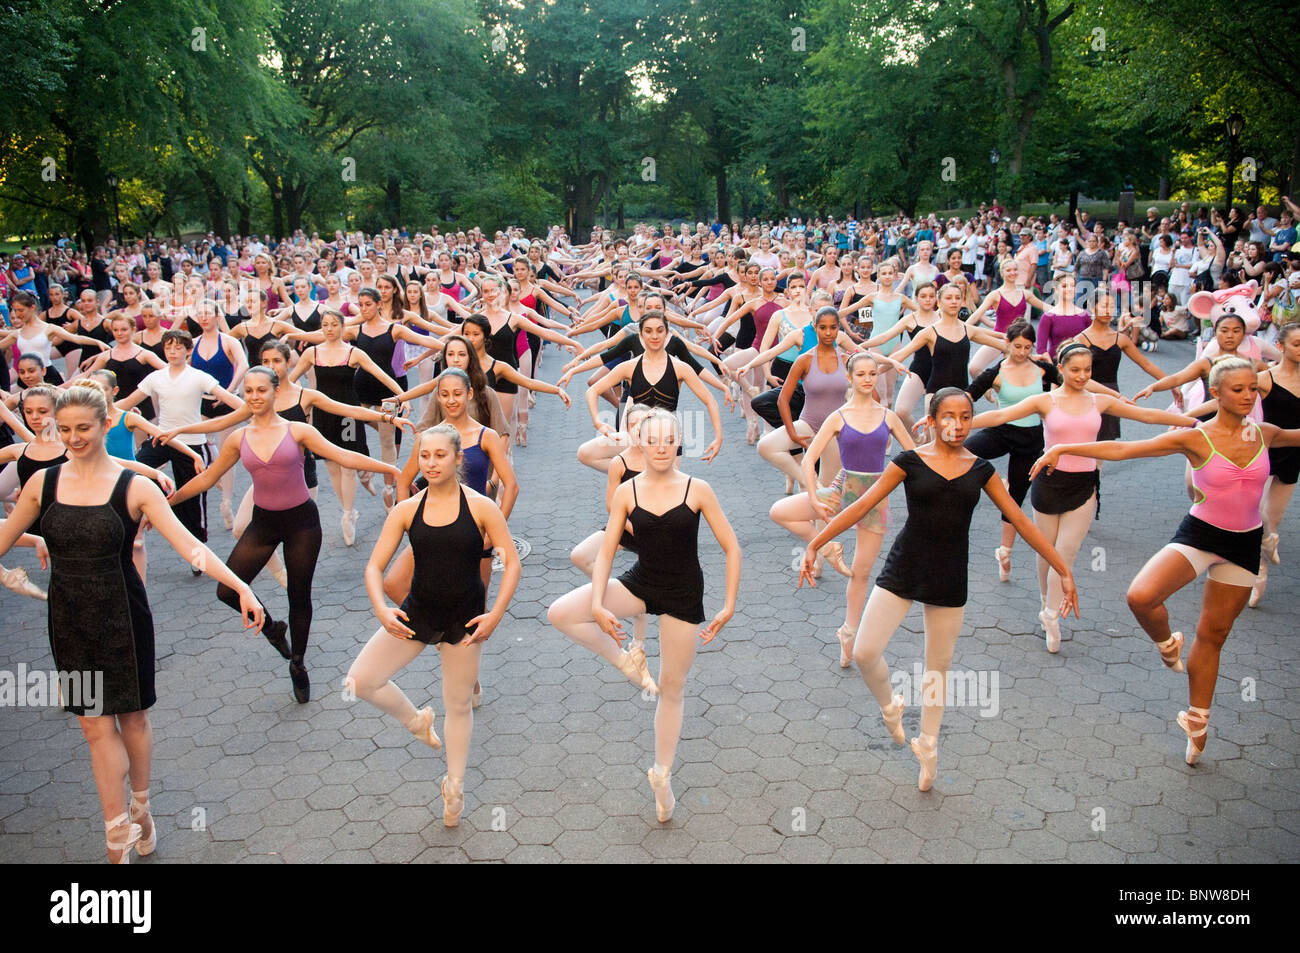 Des centaines de ballerines se rassembler dans Central Park à New York pour briser le record mondial Guinness de ballerines en pointe Banque D'Images